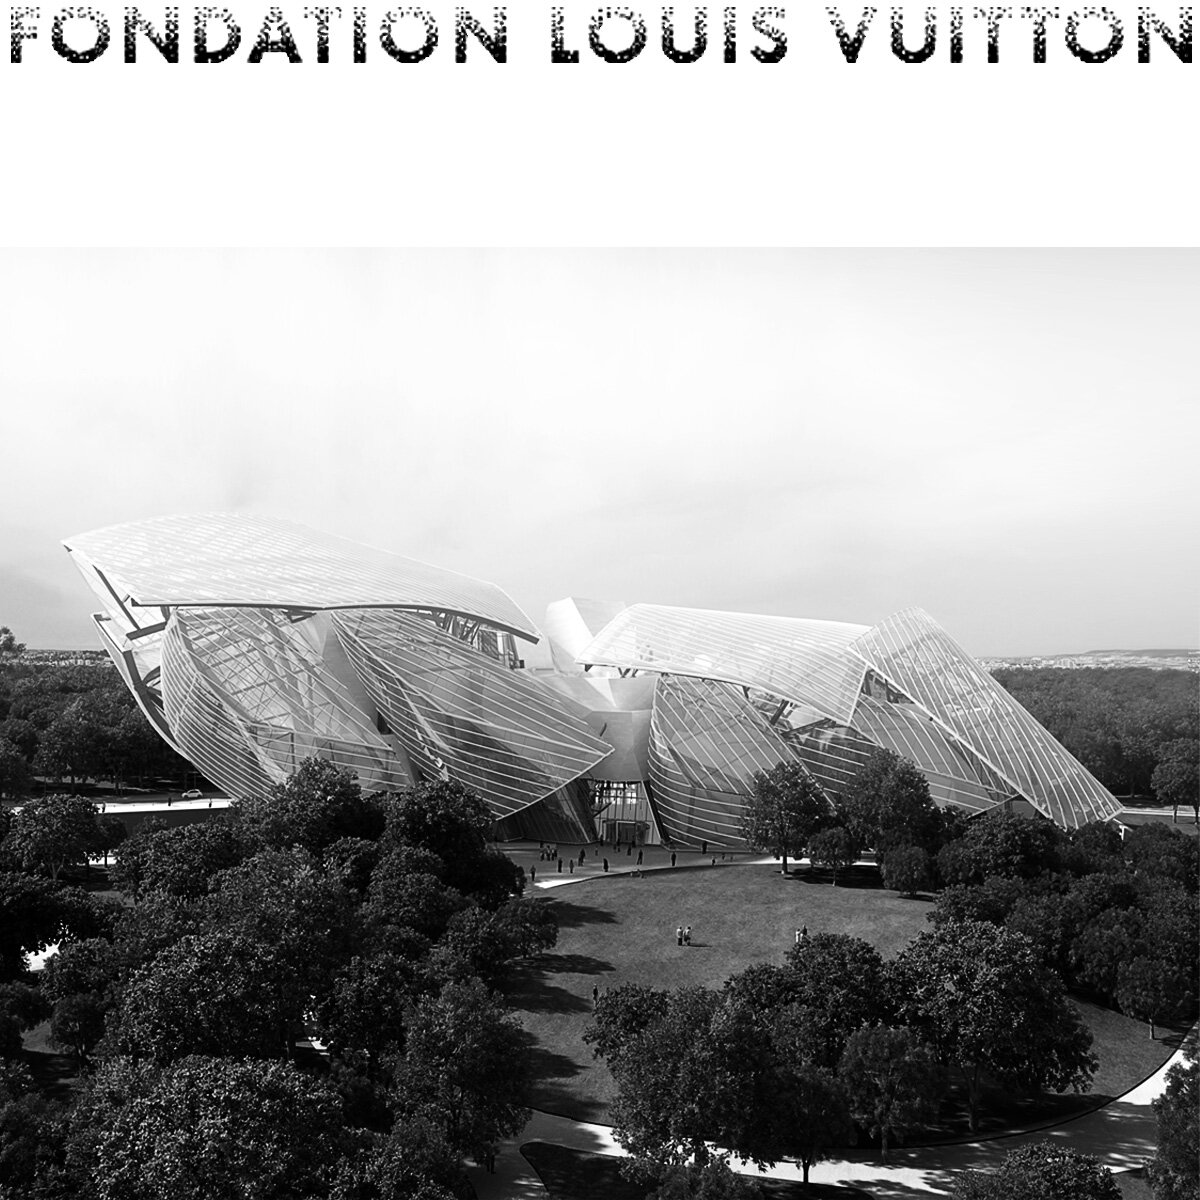 Fondation Louis Vuitton - Paris, France